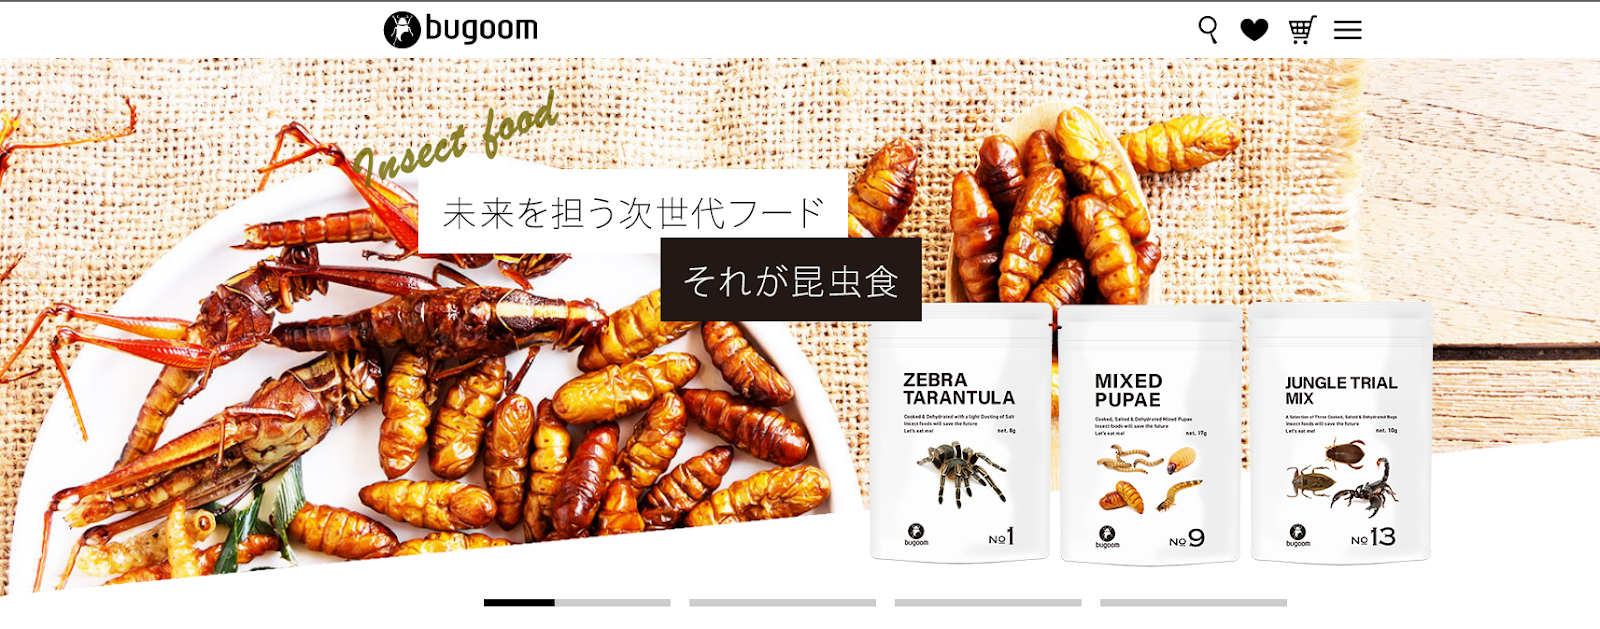 日本の昆虫食企業 Bugooの画像